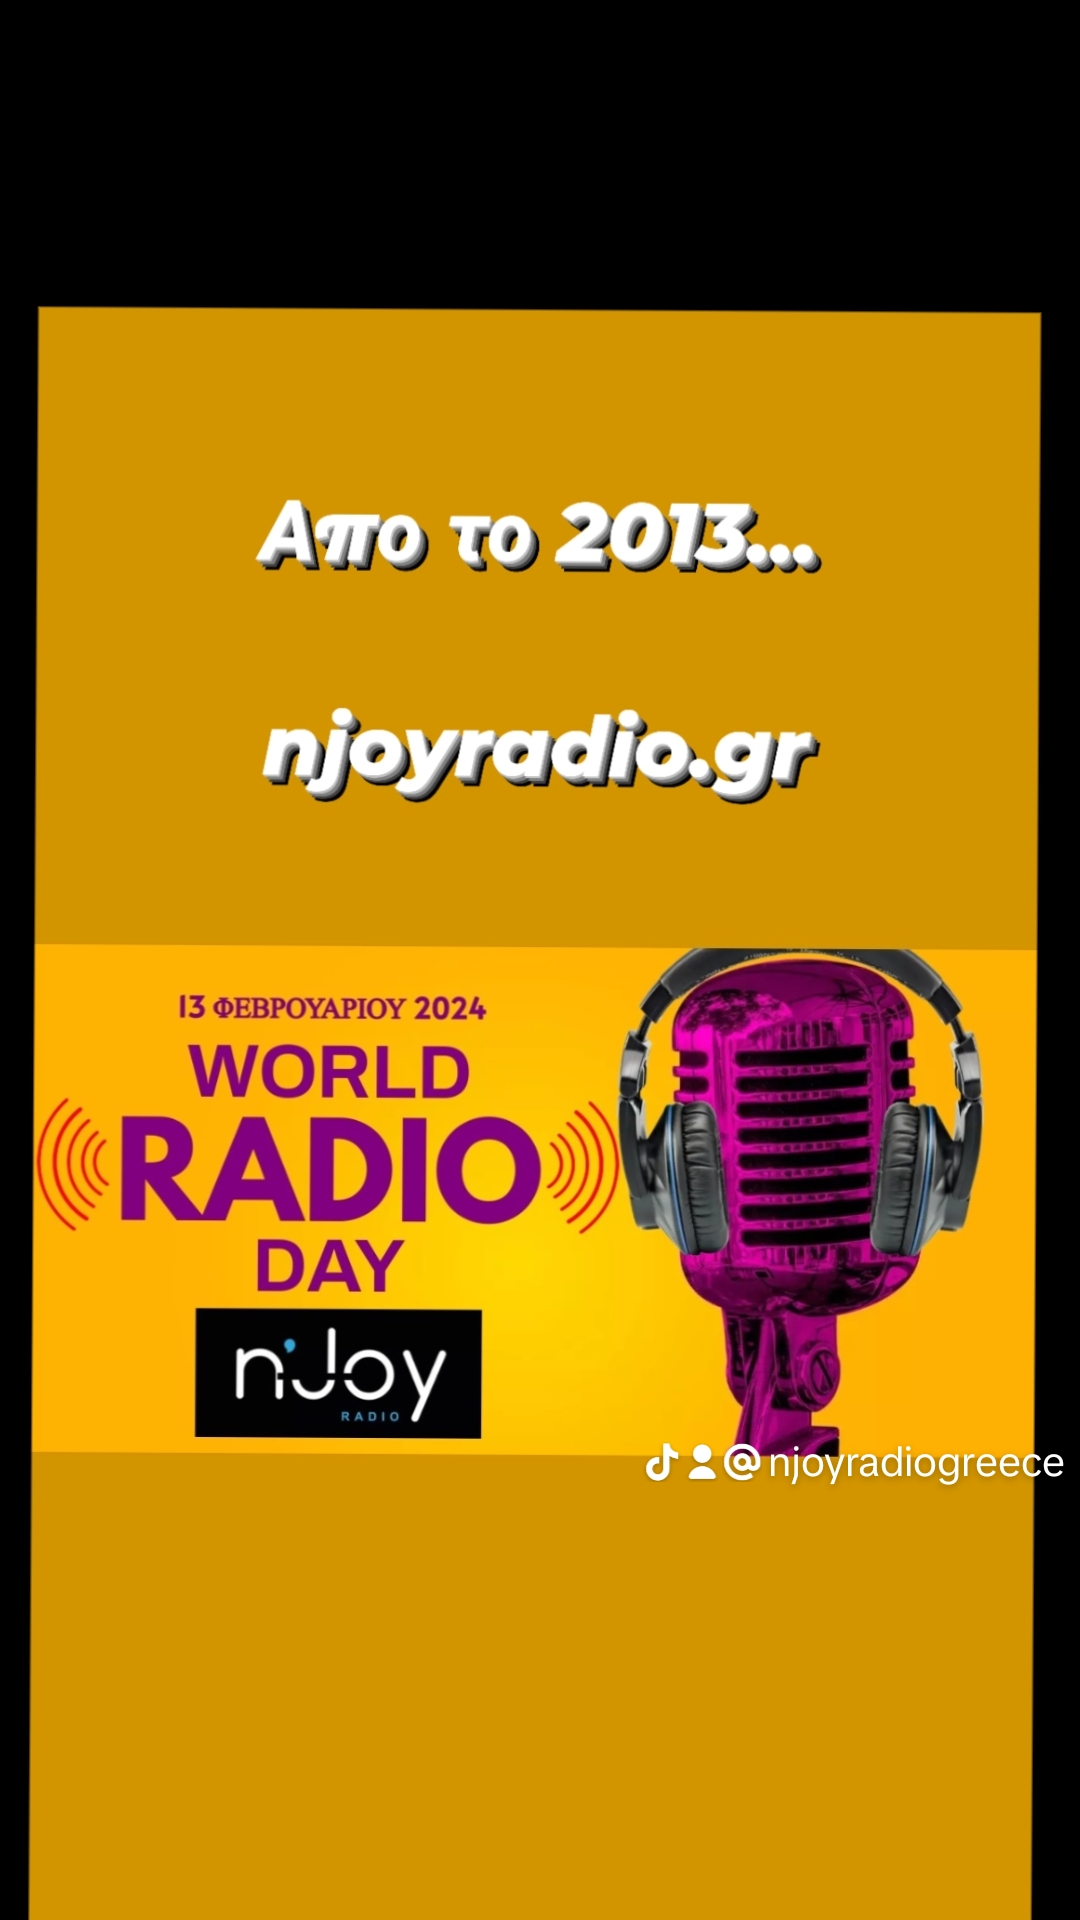 Απο το 2013…nJoy radio